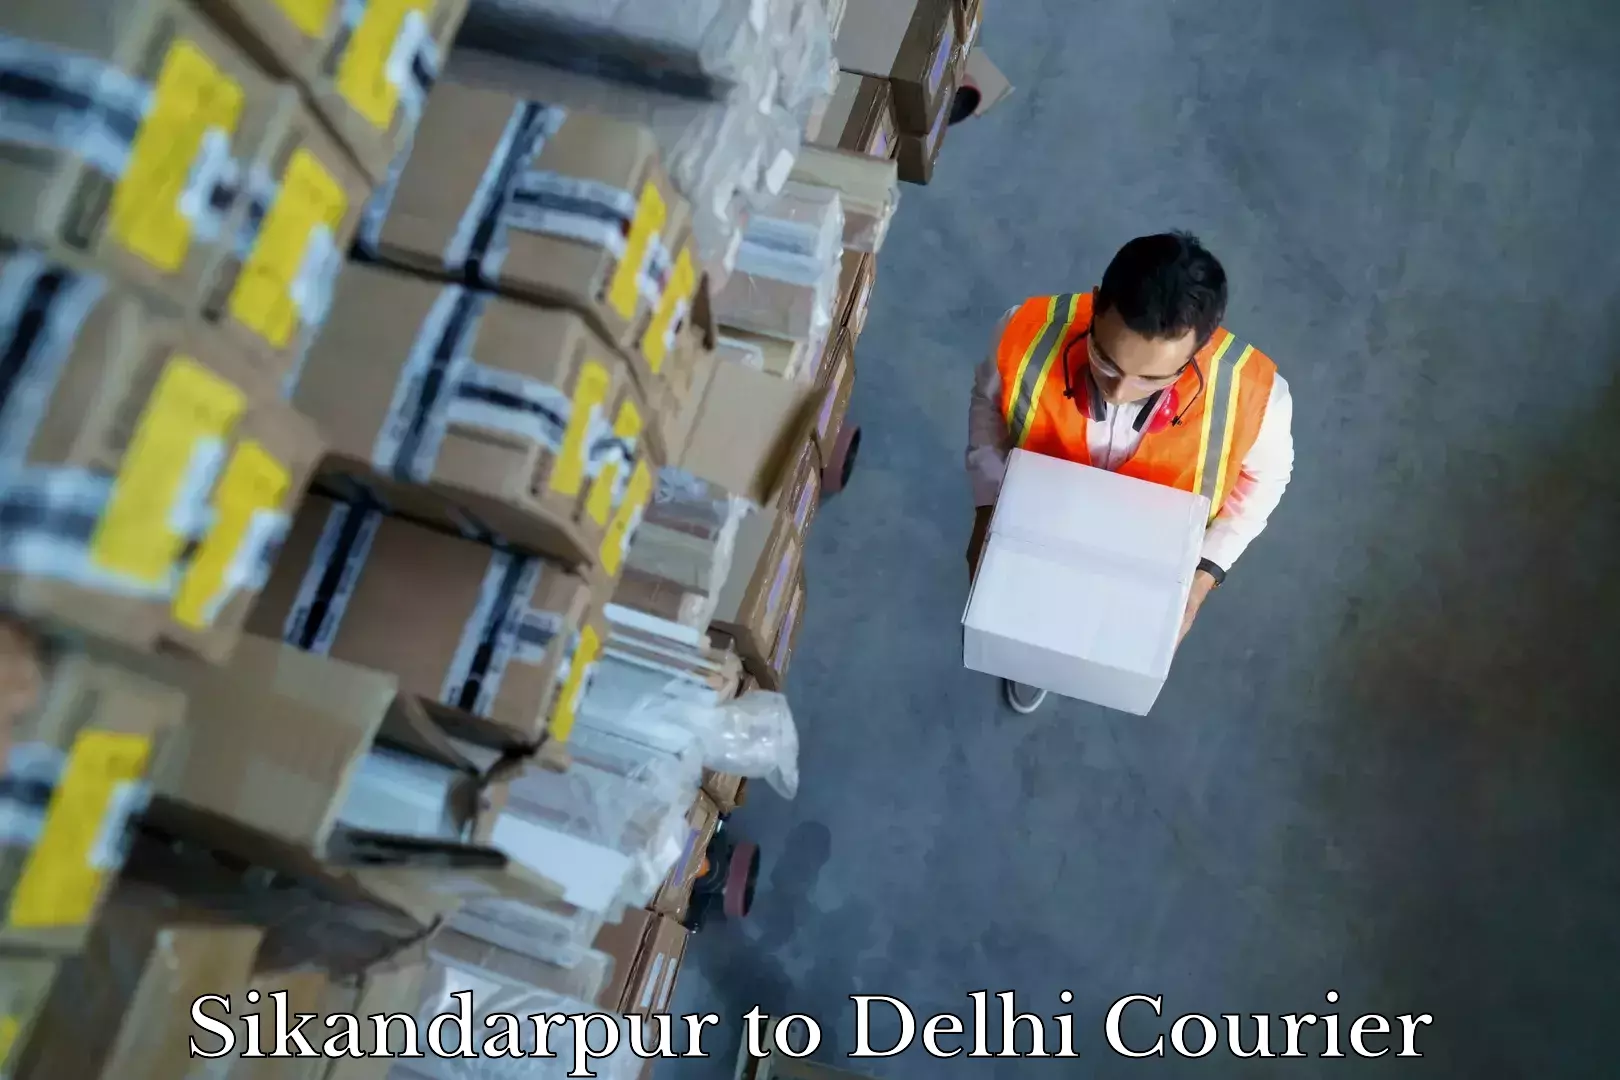 Household goods transporters Sikandarpur to University of Delhi